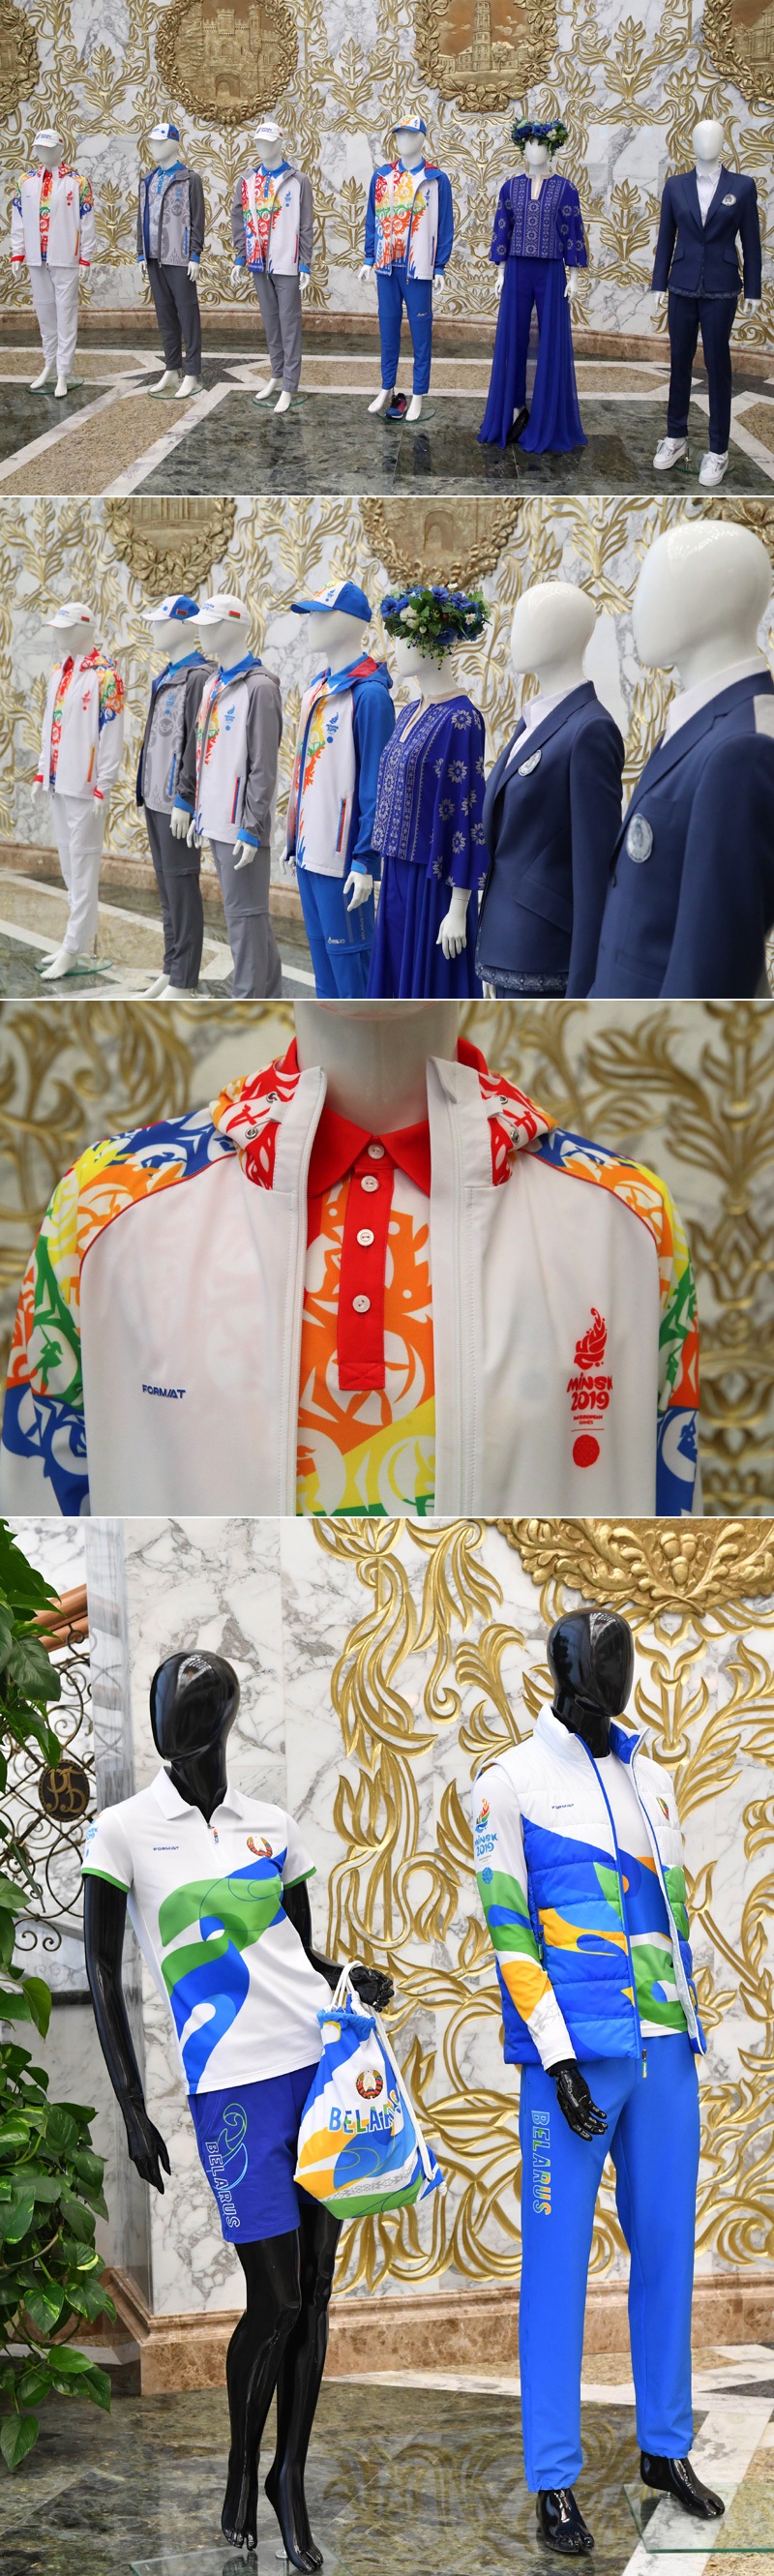 Парадная и спортивная формы белорусских атлетов и волонтеров на II Европейских играх 2019 года